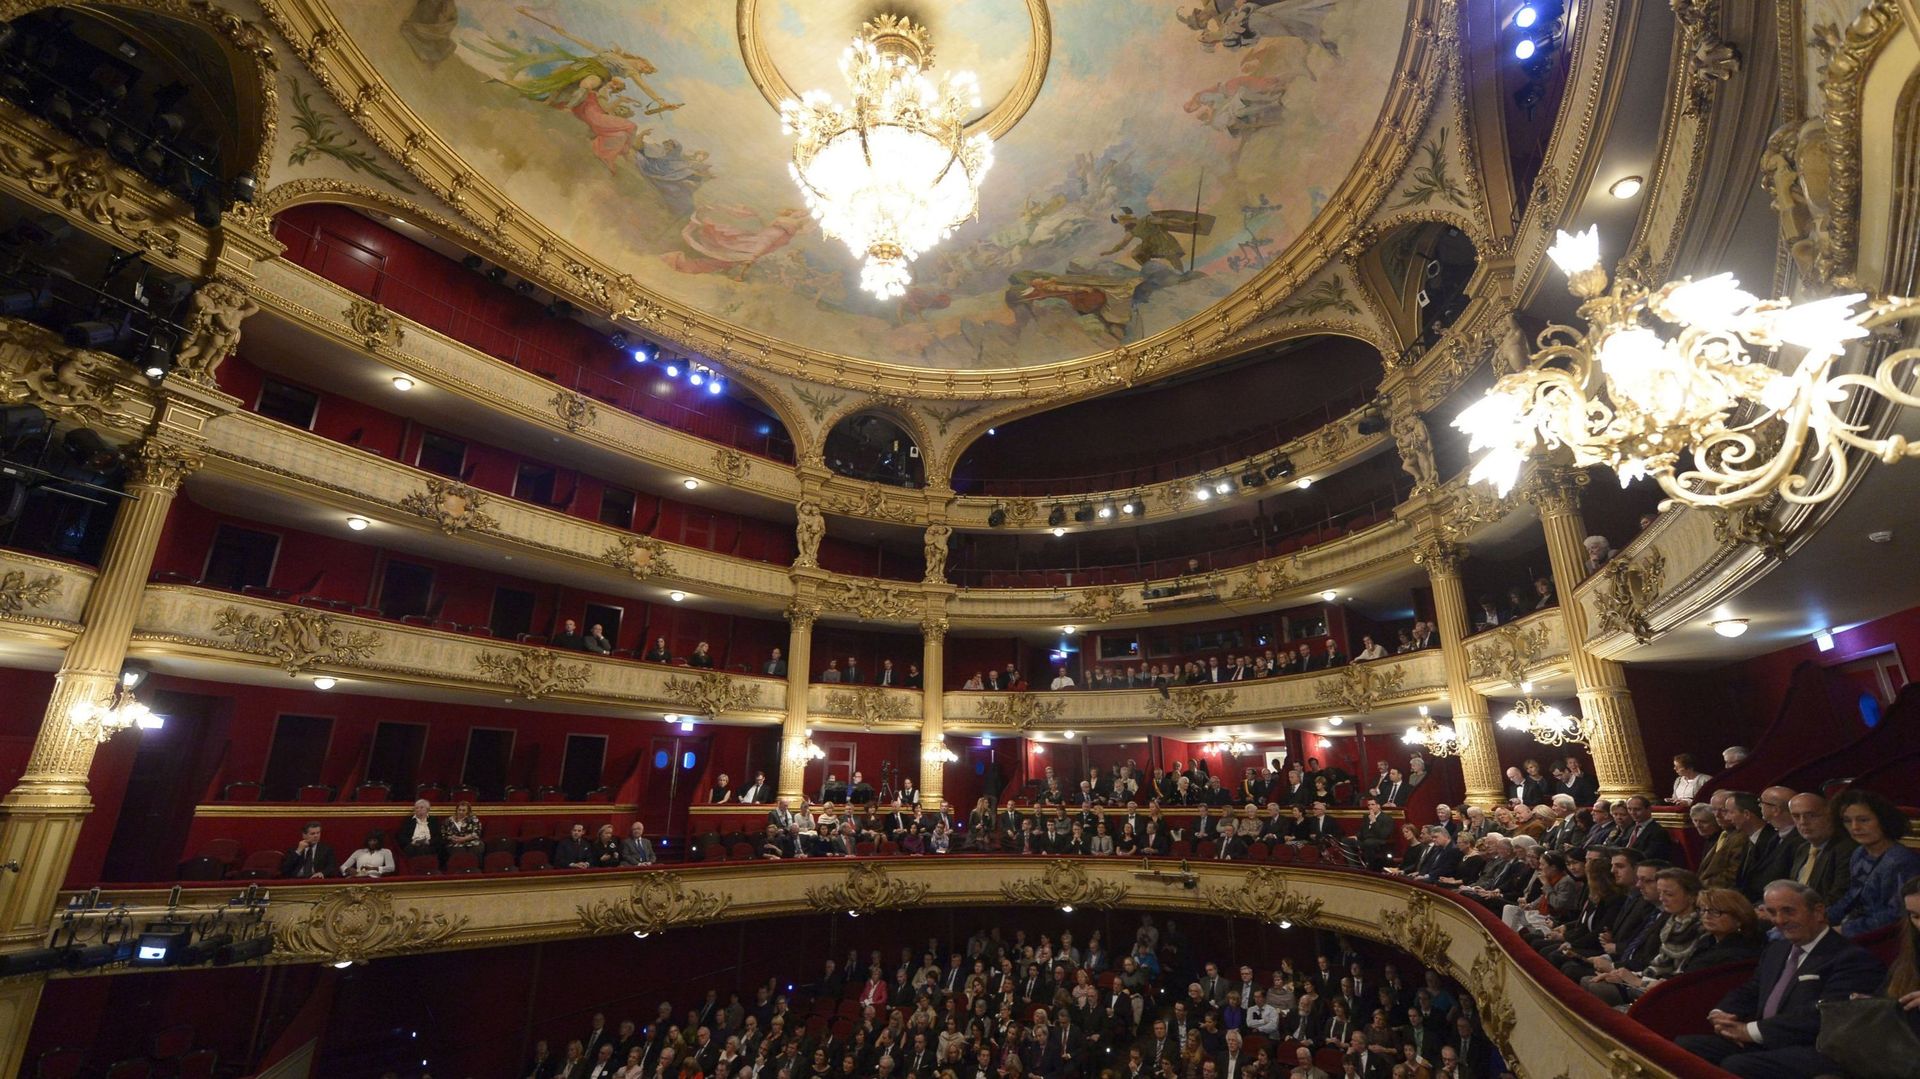 "On veut liquider l’héritage de Mazzonis" : Philippe Monfils réclame une réunion d’urgence du Conseil d’administration à l’Opéra de Liège